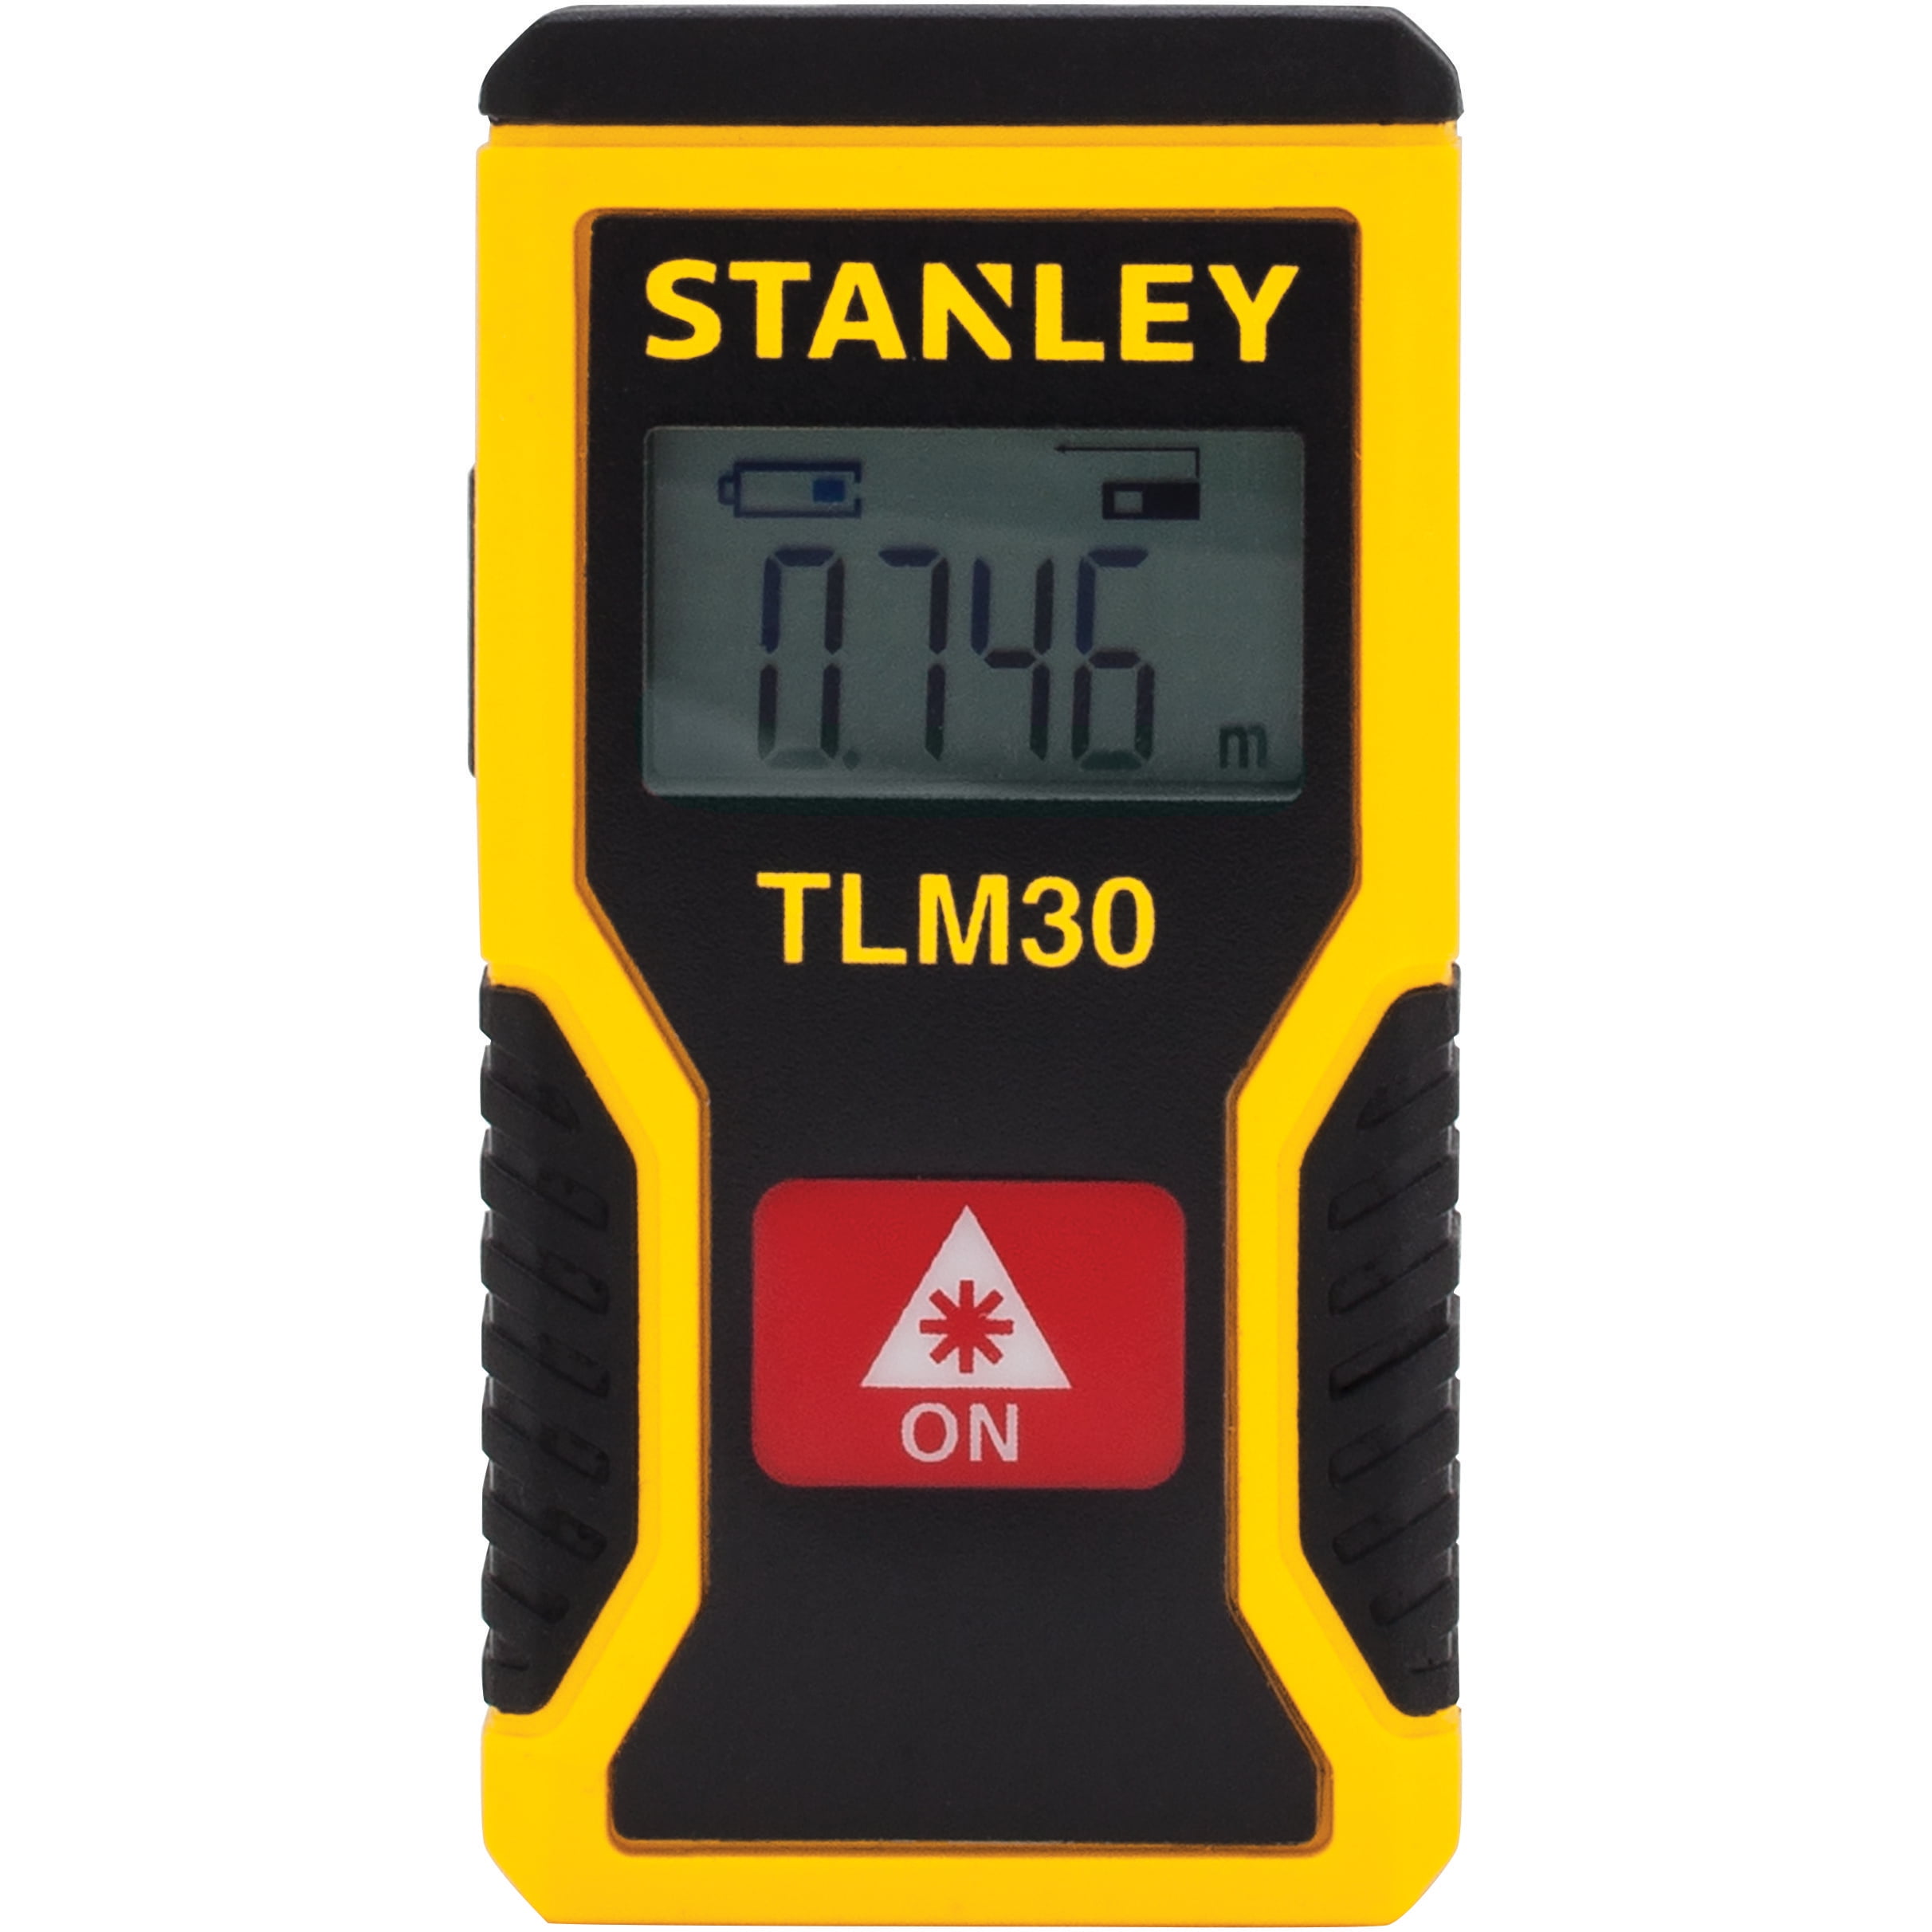 STANLEY Laserentfernungsmesser bis 12m STHT77666-0  Laser Messgerät